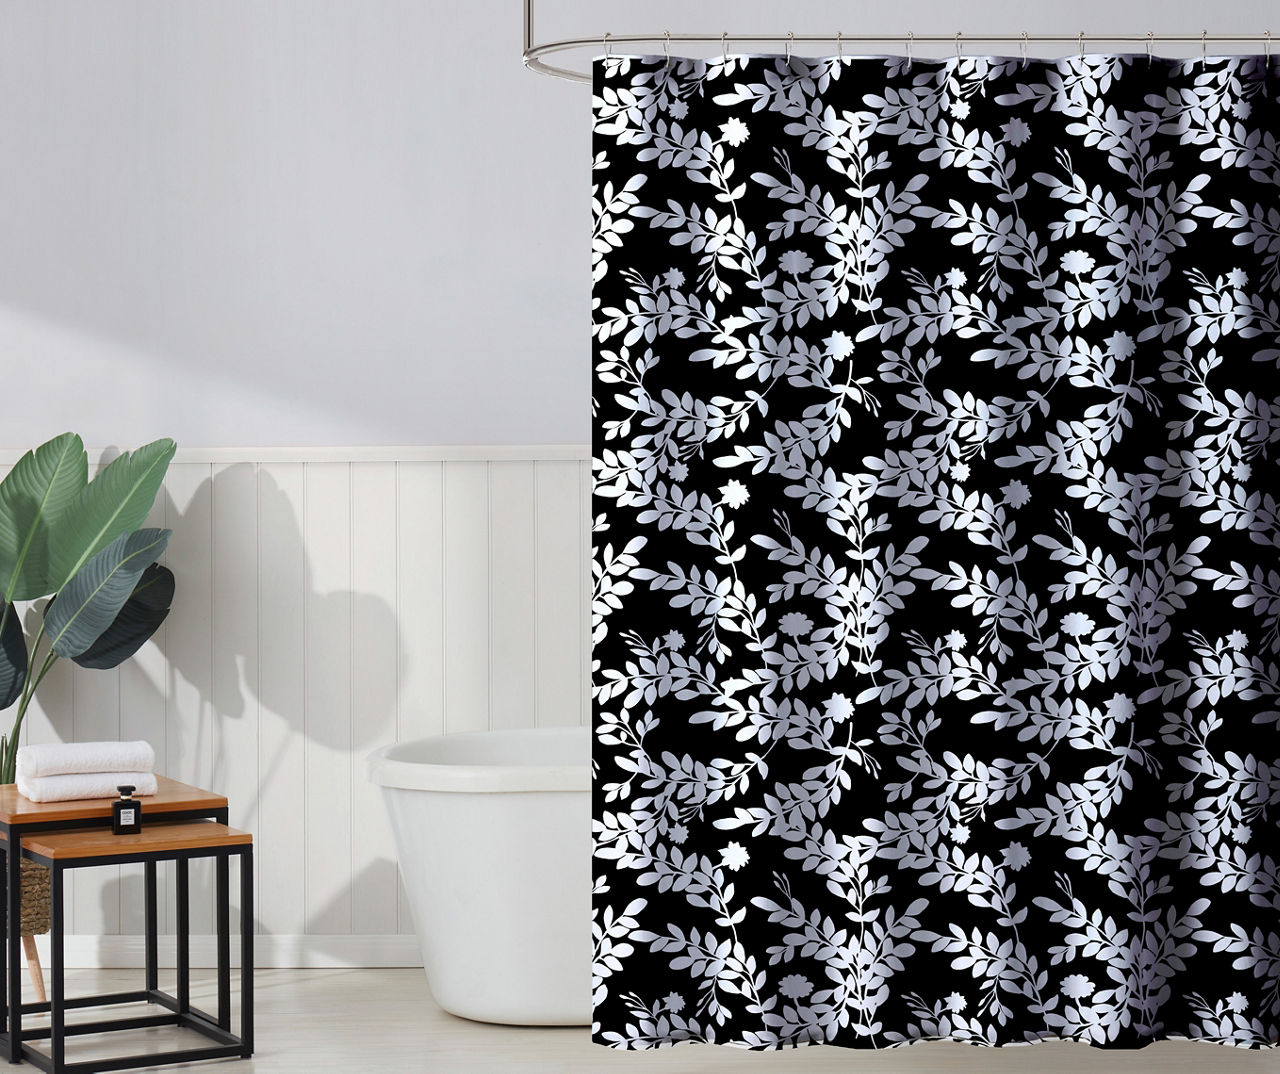 Black & White Floral PEVA Shower Curtain